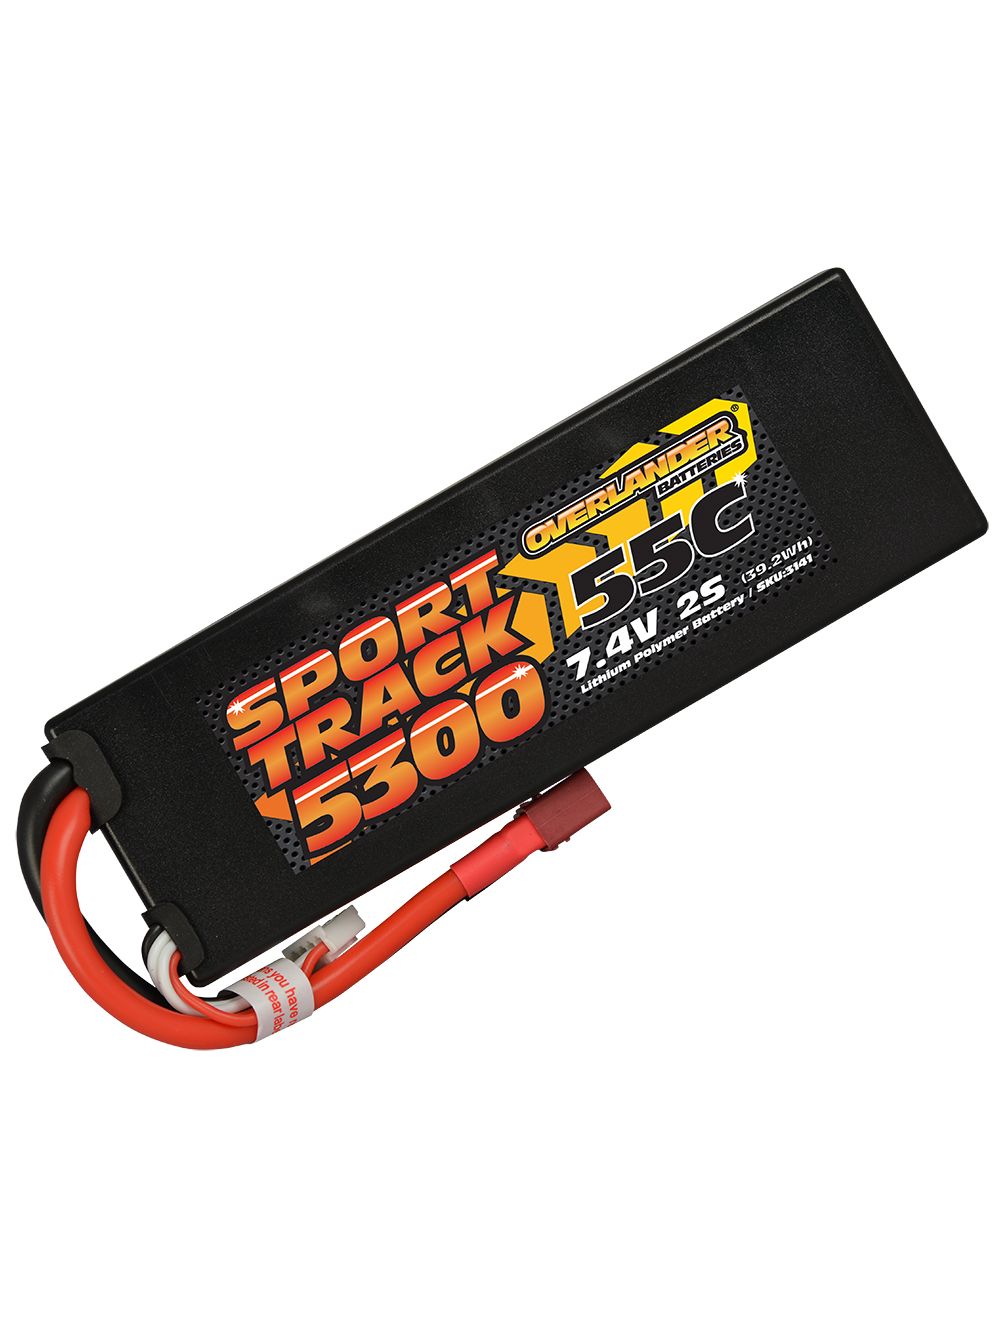 Overlander 5300mAh 7.4V 2S 55C Hard Case Sport Track LiPo Battery - Deans Connector 3141